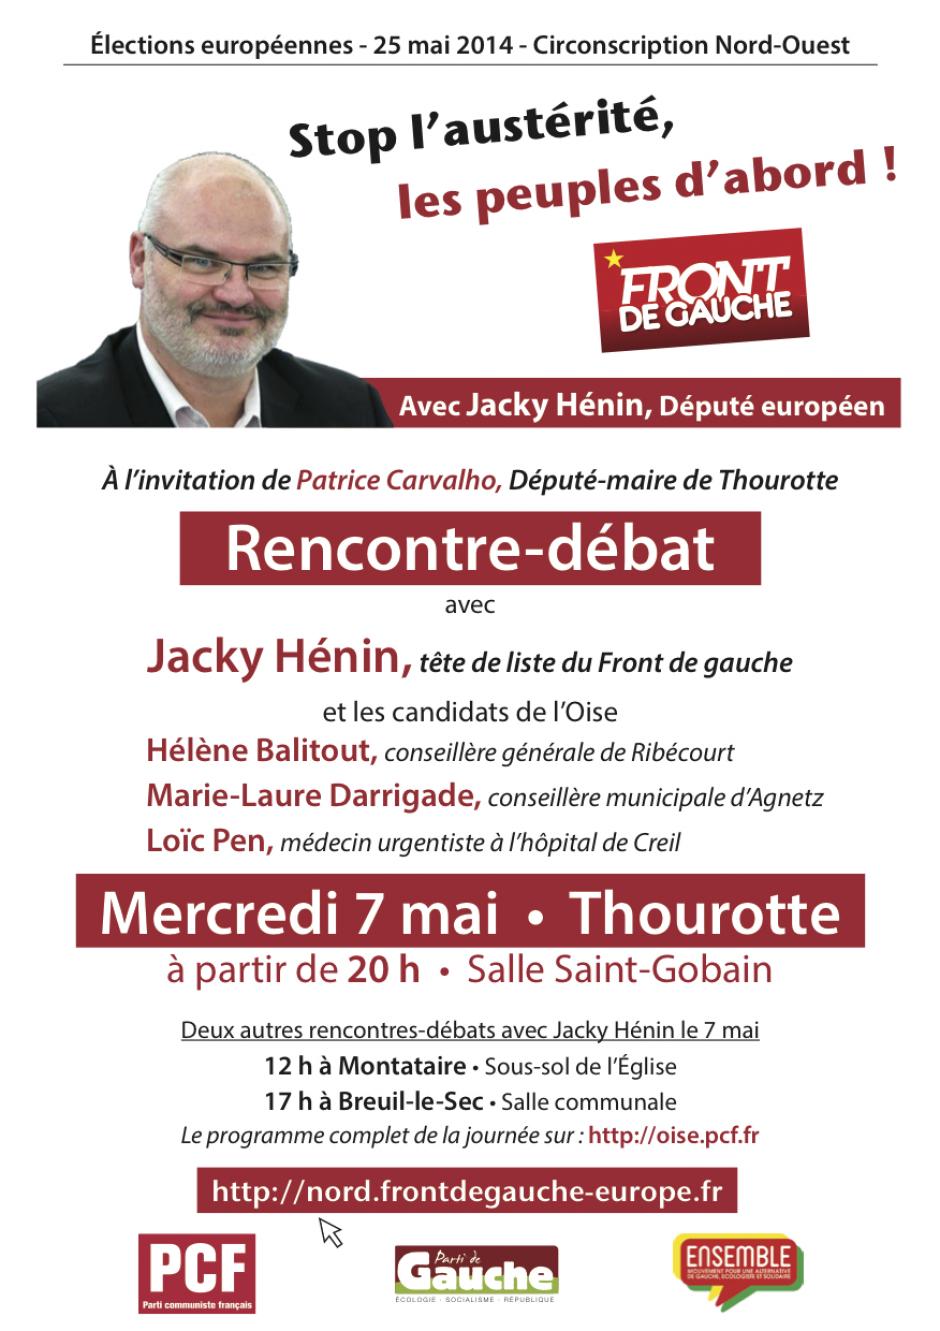 7 mai, Thourotte - Réunion publique avec Jacky Hénin et Patrice Carvalho